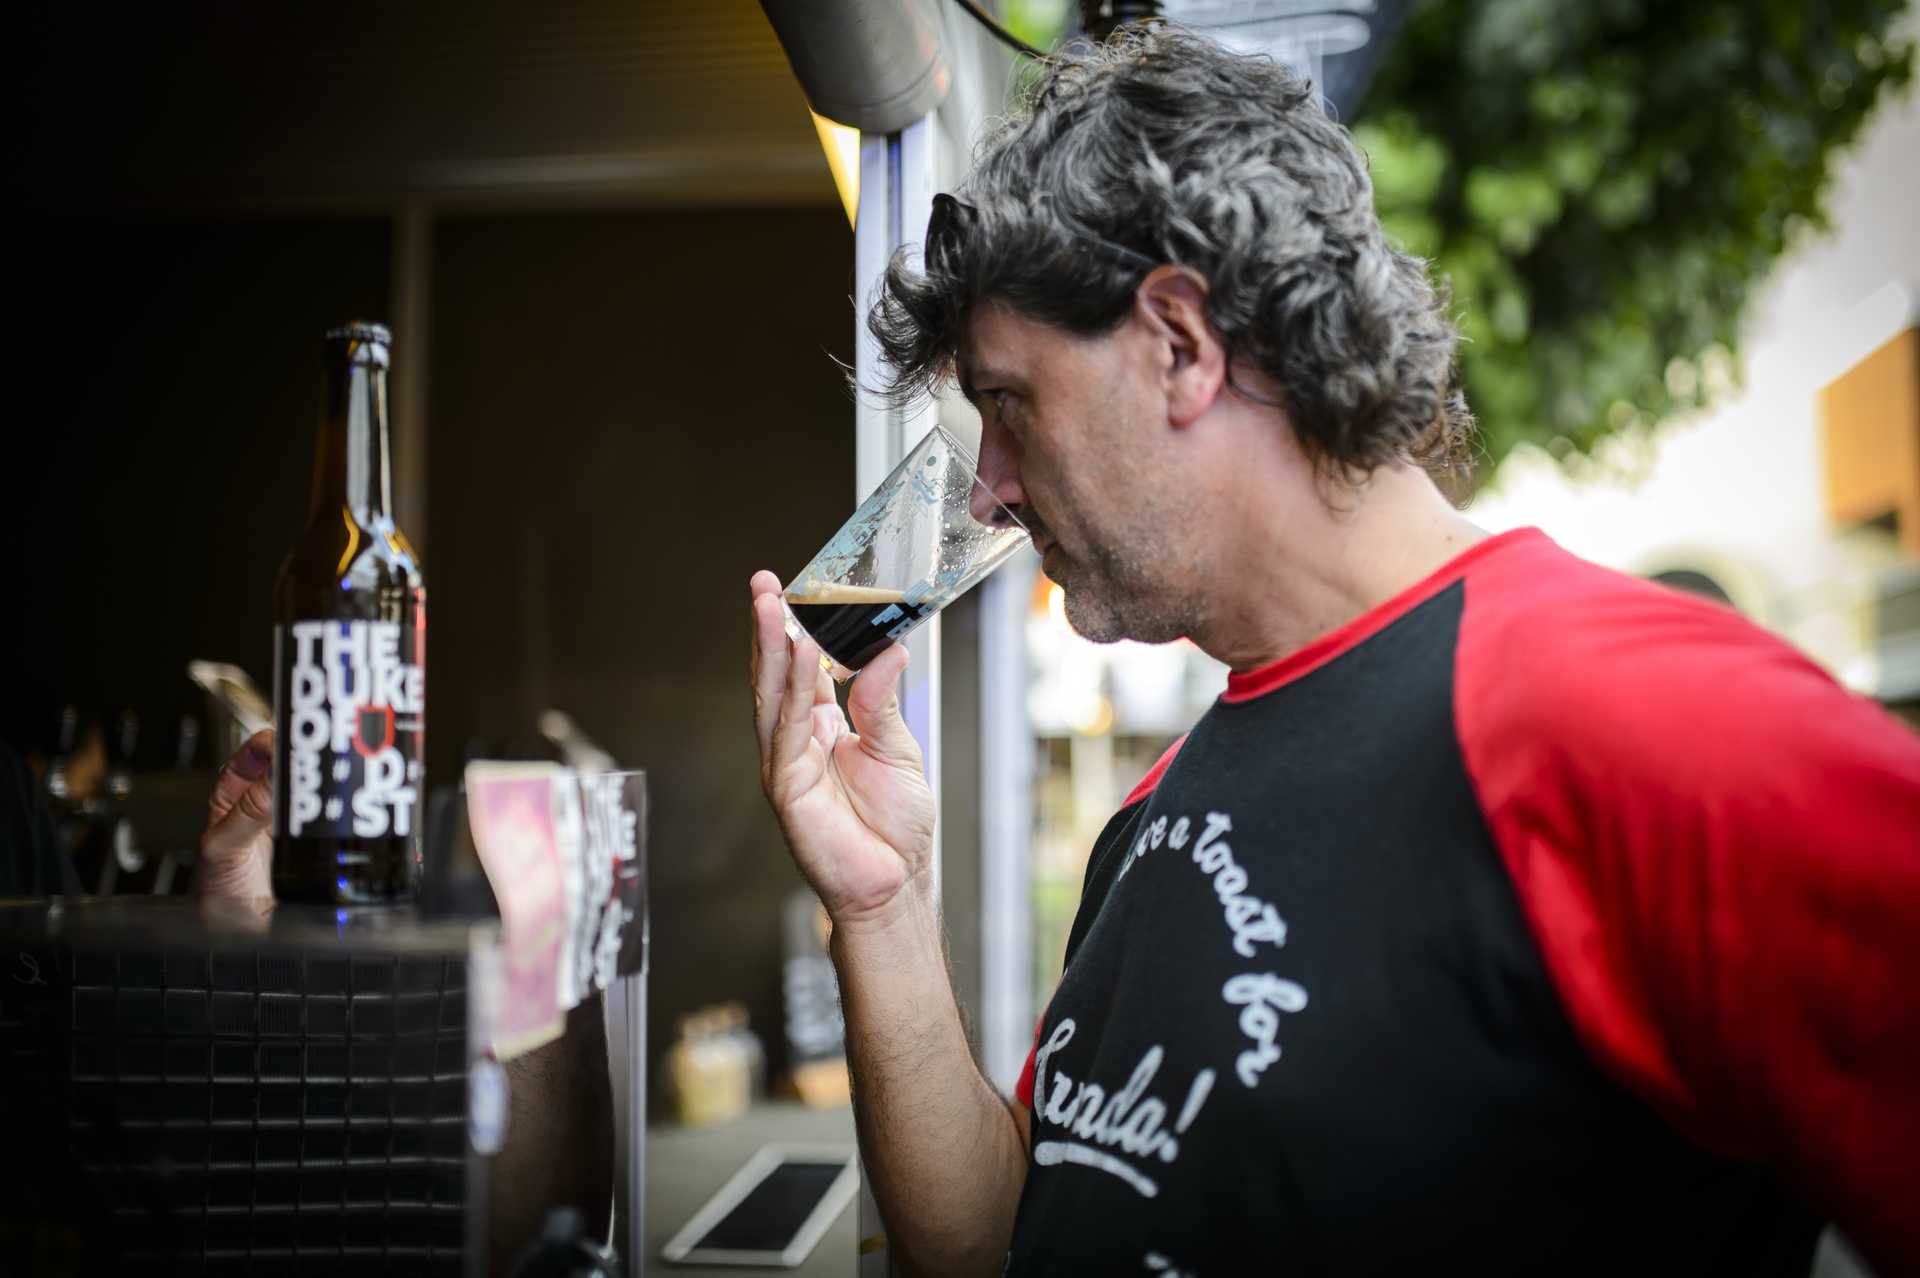 Artbeerfest – festival de cerveja artesanal em Caminha